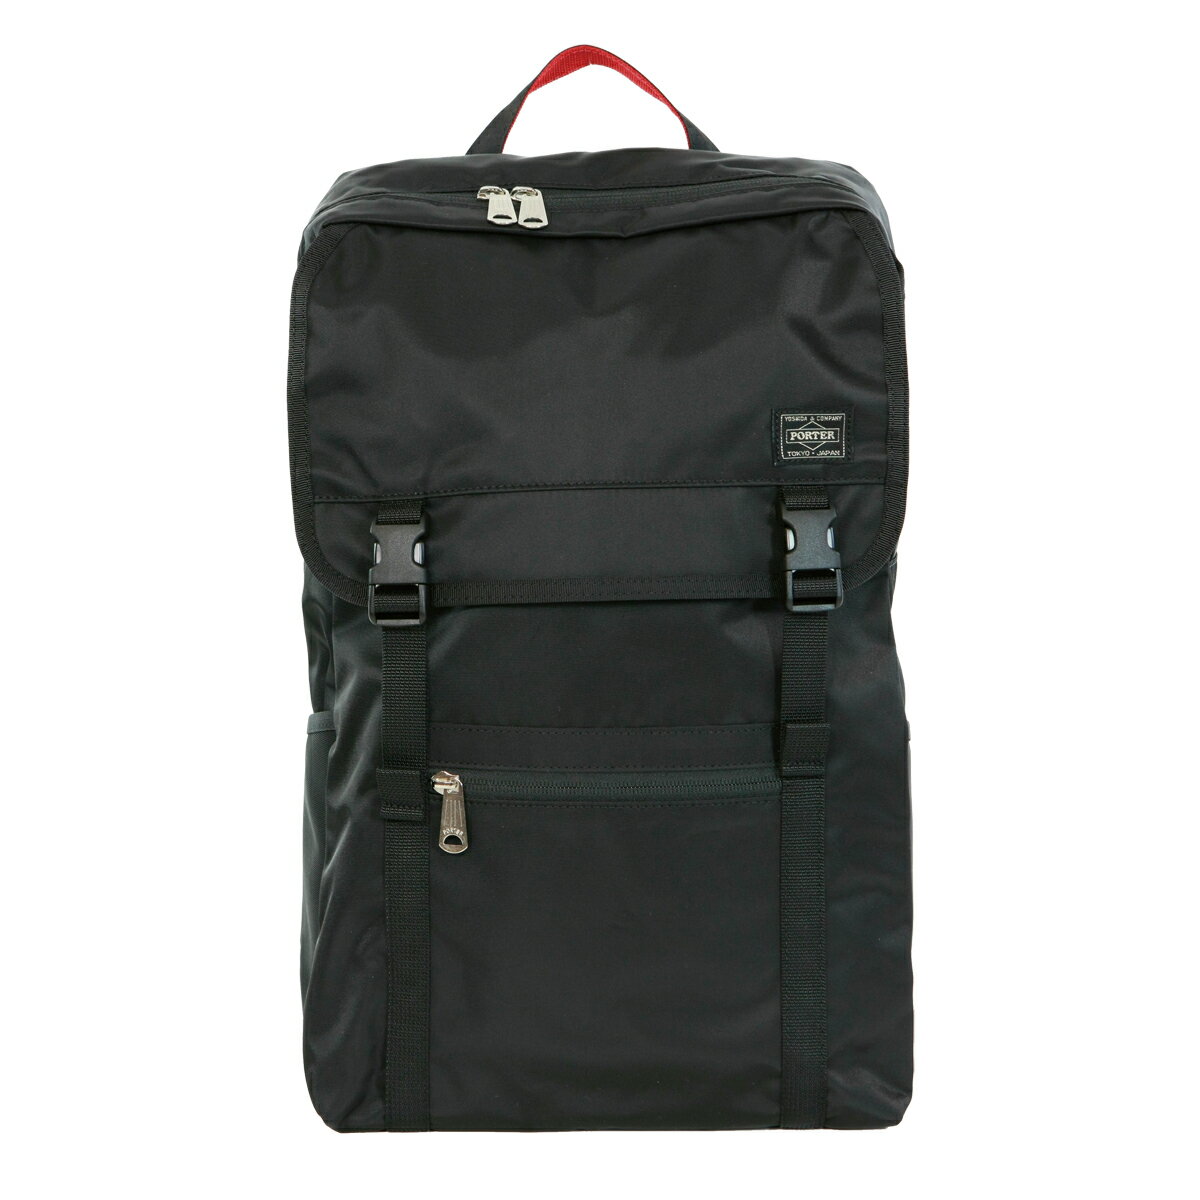 男女兼用バッグ, バックパック・リュック  383-18123 PORTER L-fine MADE IN JAPAN A4 PORTER ILS backpack Daypack LYD383-18123 Black Red